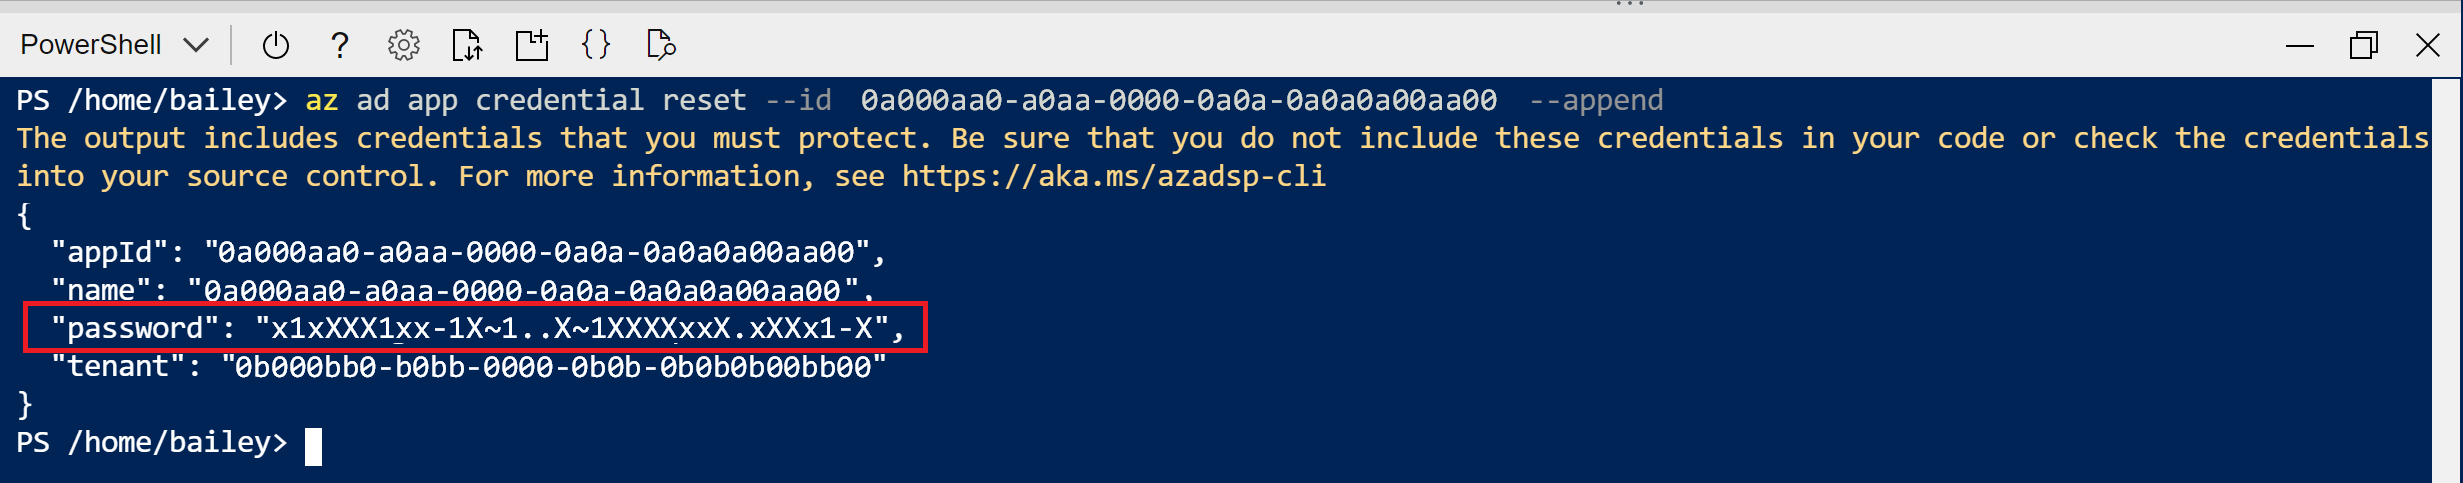 应用注册创建命令的 Cloud Shell 输出的屏幕截图。突出显示了密码值。